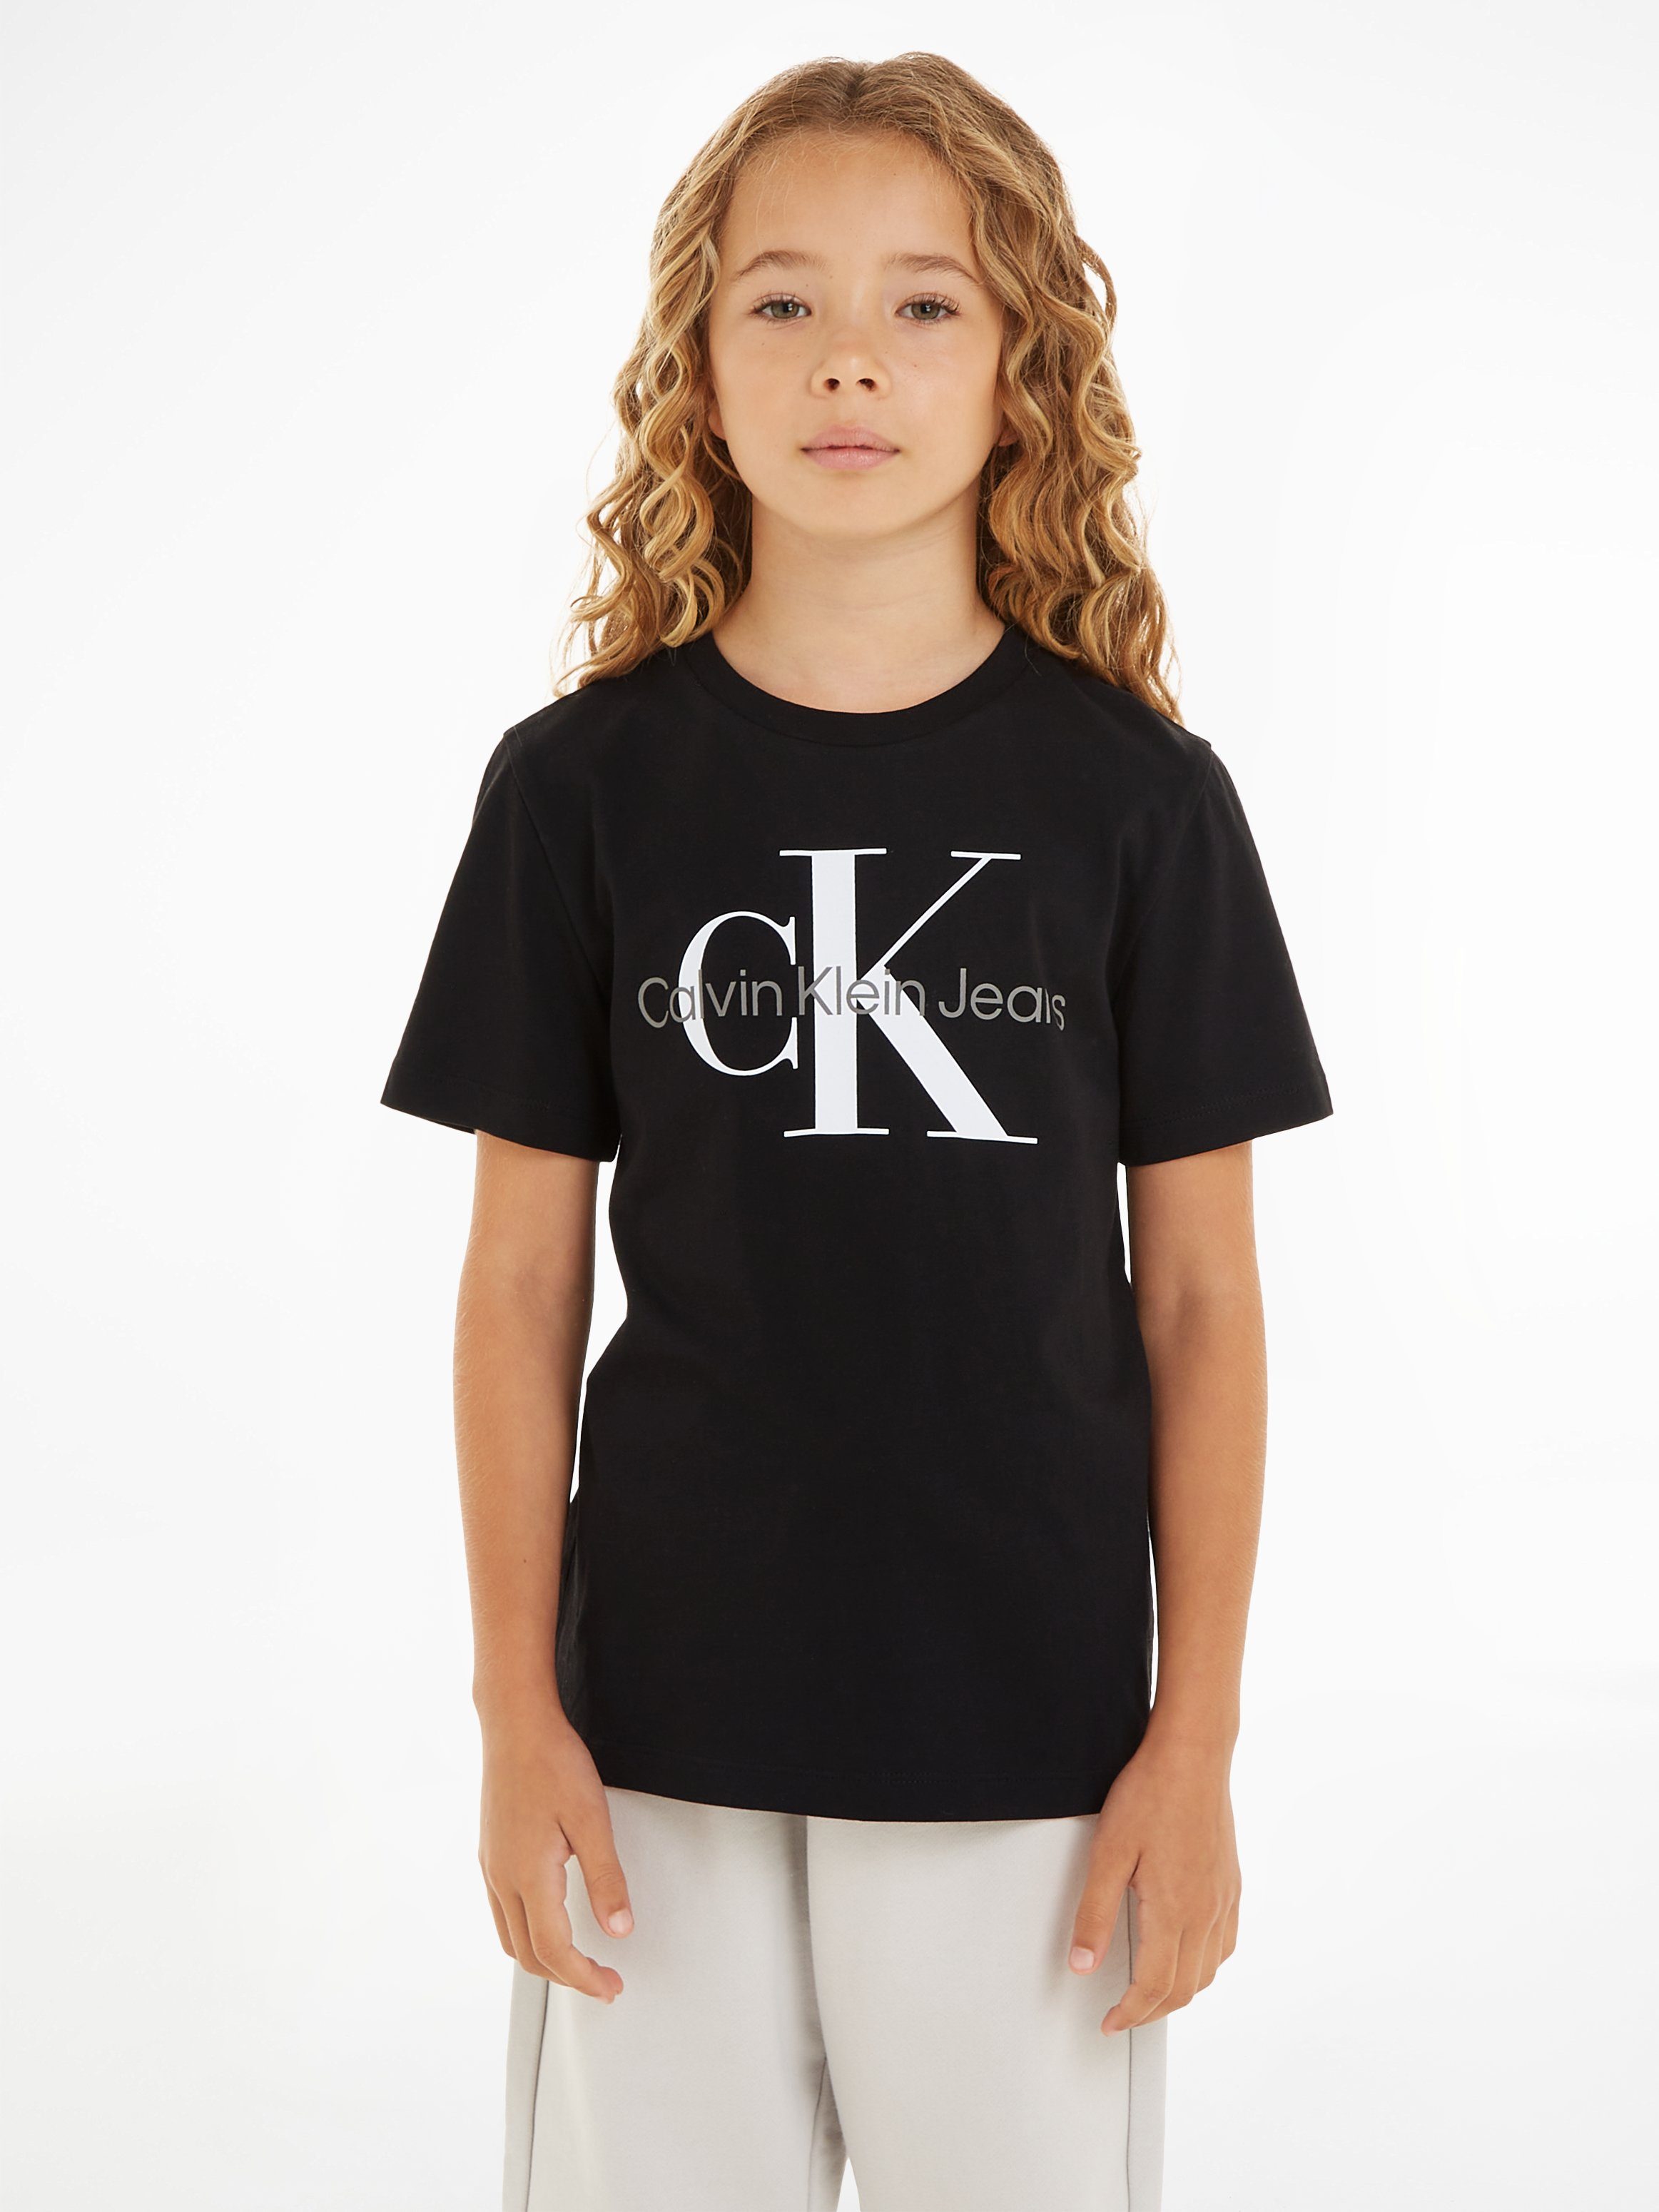 MONOGRAM SS Black Klein Jeans CK Calvin T-Shirt T-SHIRT Ck